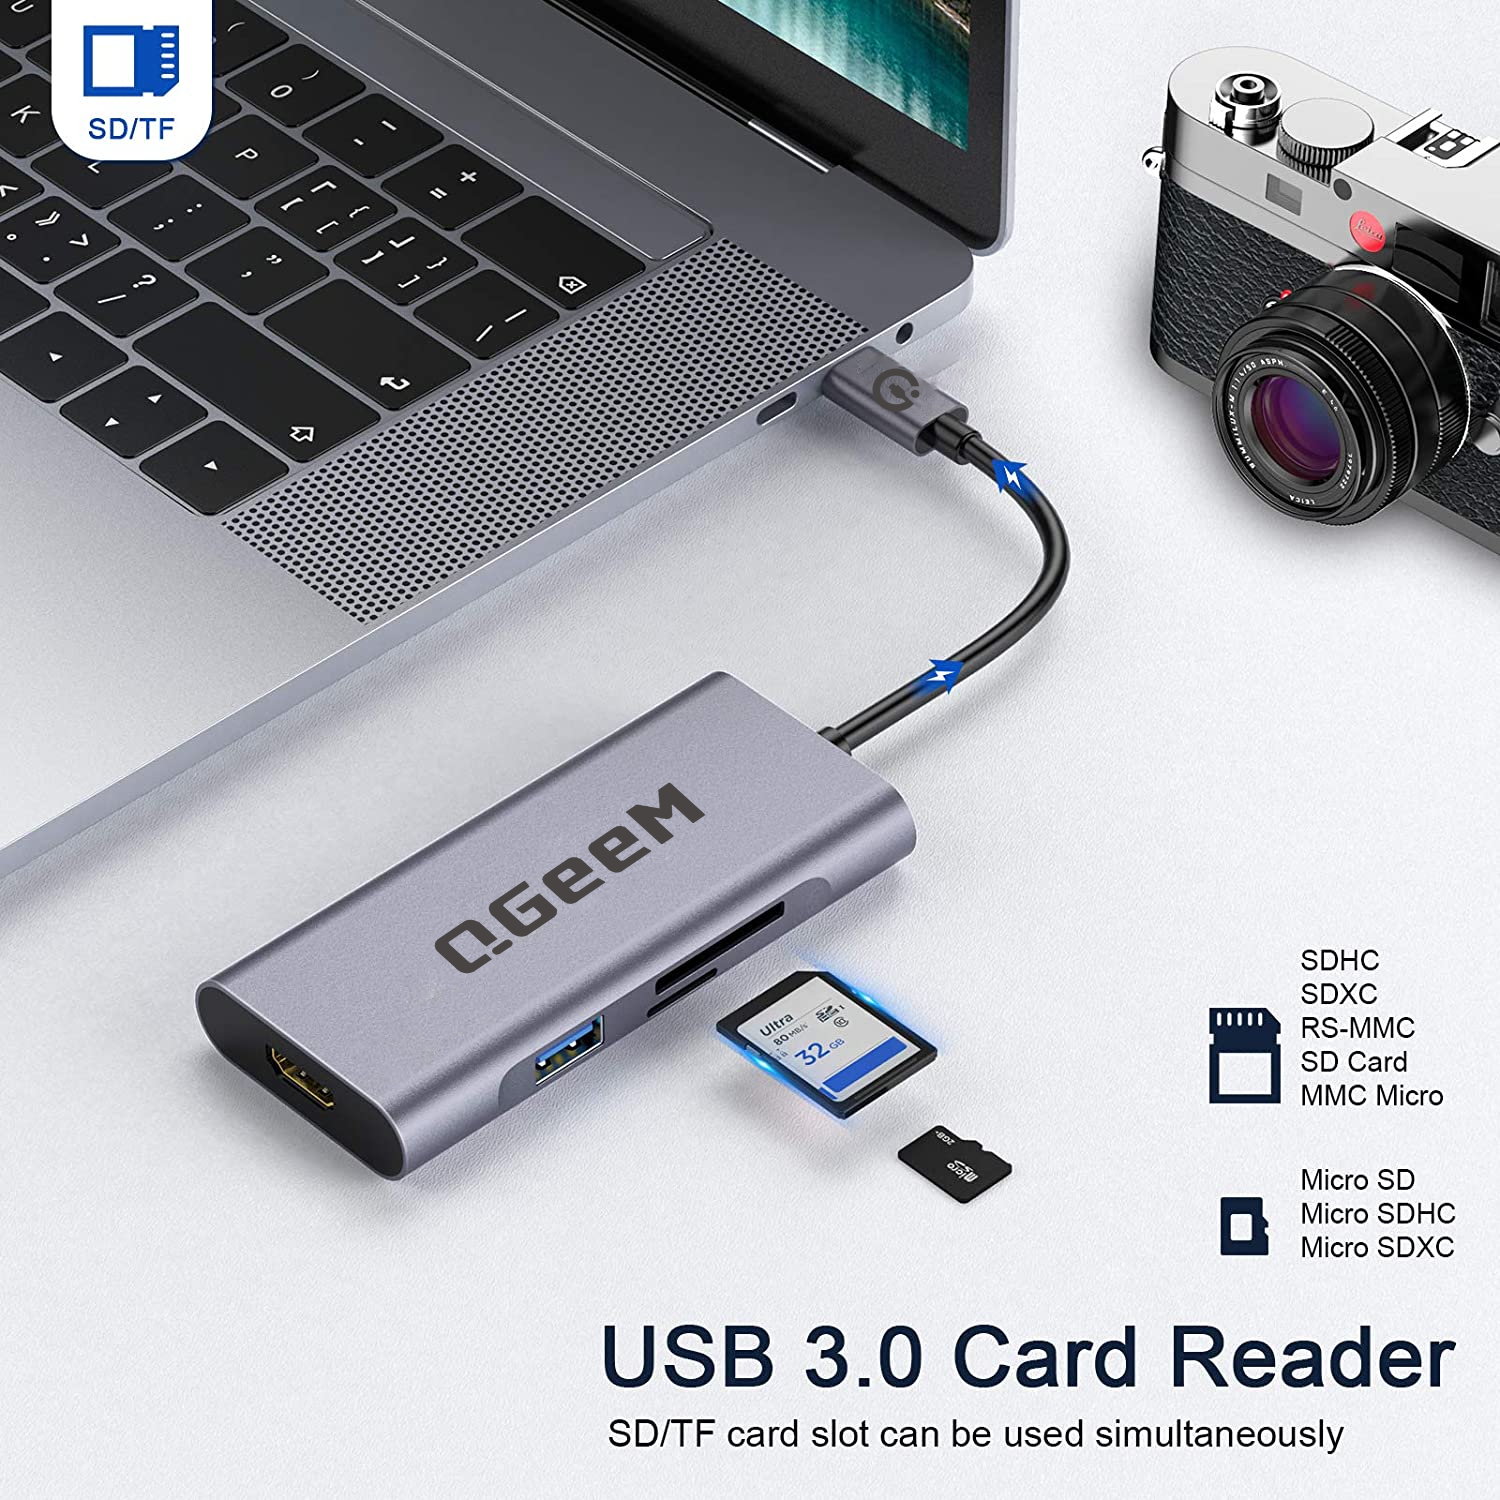 Bộ Hub USB C QGeeM 7 trong 1 4K Type C sang HDMI, 3 x USB 3.0, 1 x USB-C sạc nhanh PD 100w, 1 khe đọc thẻ SD&TF tương thích với MacBook Pro 13/15 (Thunderbolt 3), 2018 Mac Air, Chromebook Type C Adapter - Hàng Chính Hãng